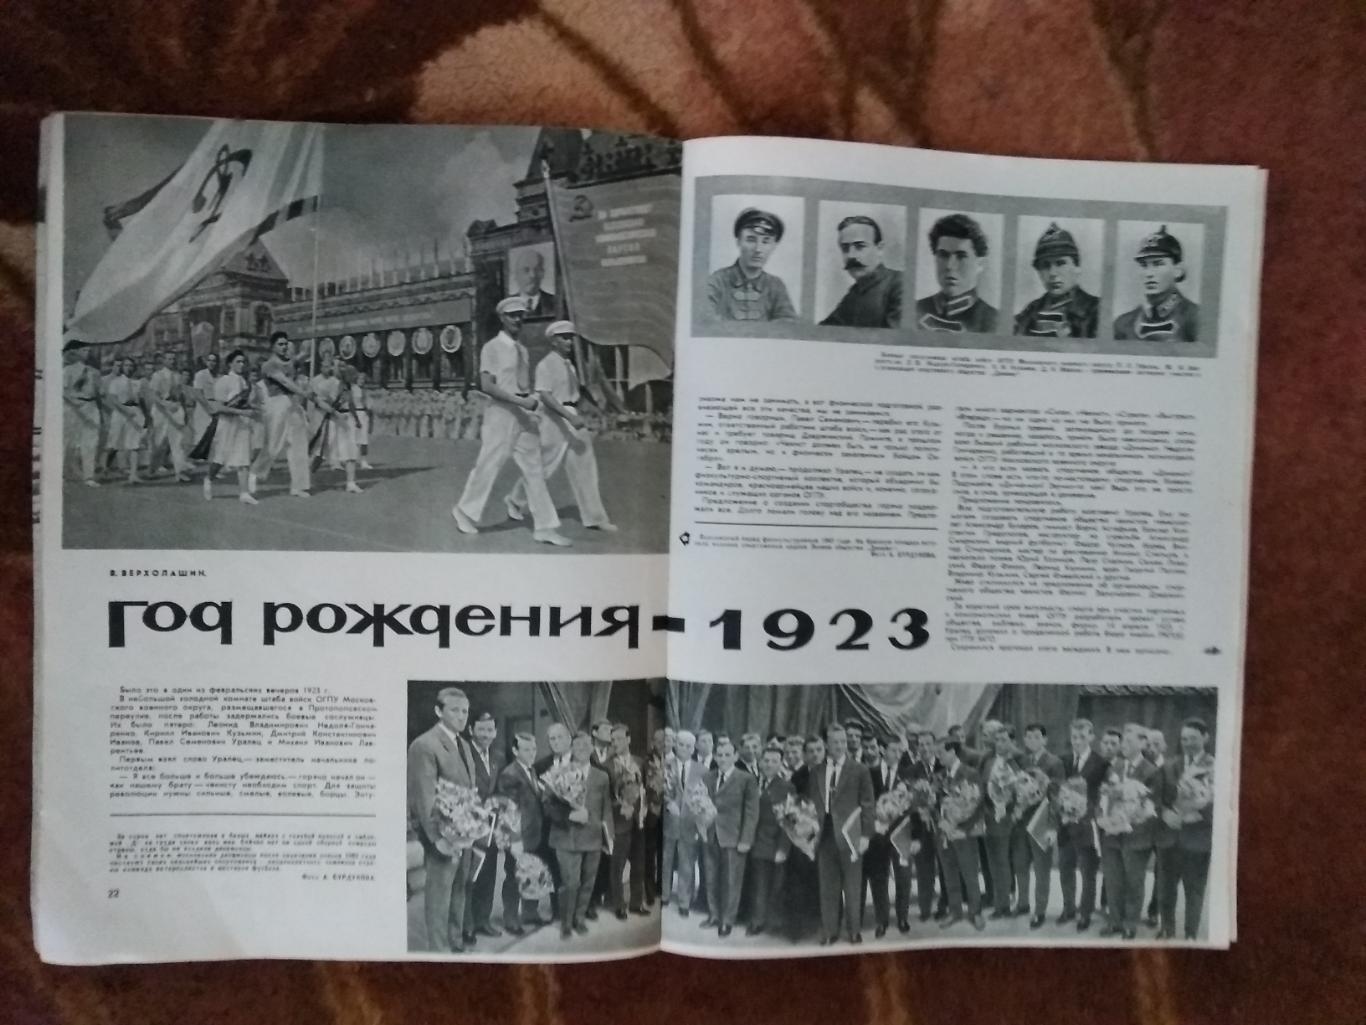 Журнал.Физкультура и спорт№ 3 1963 г. (40 лет ДСО Динамо).(ФиС). 2